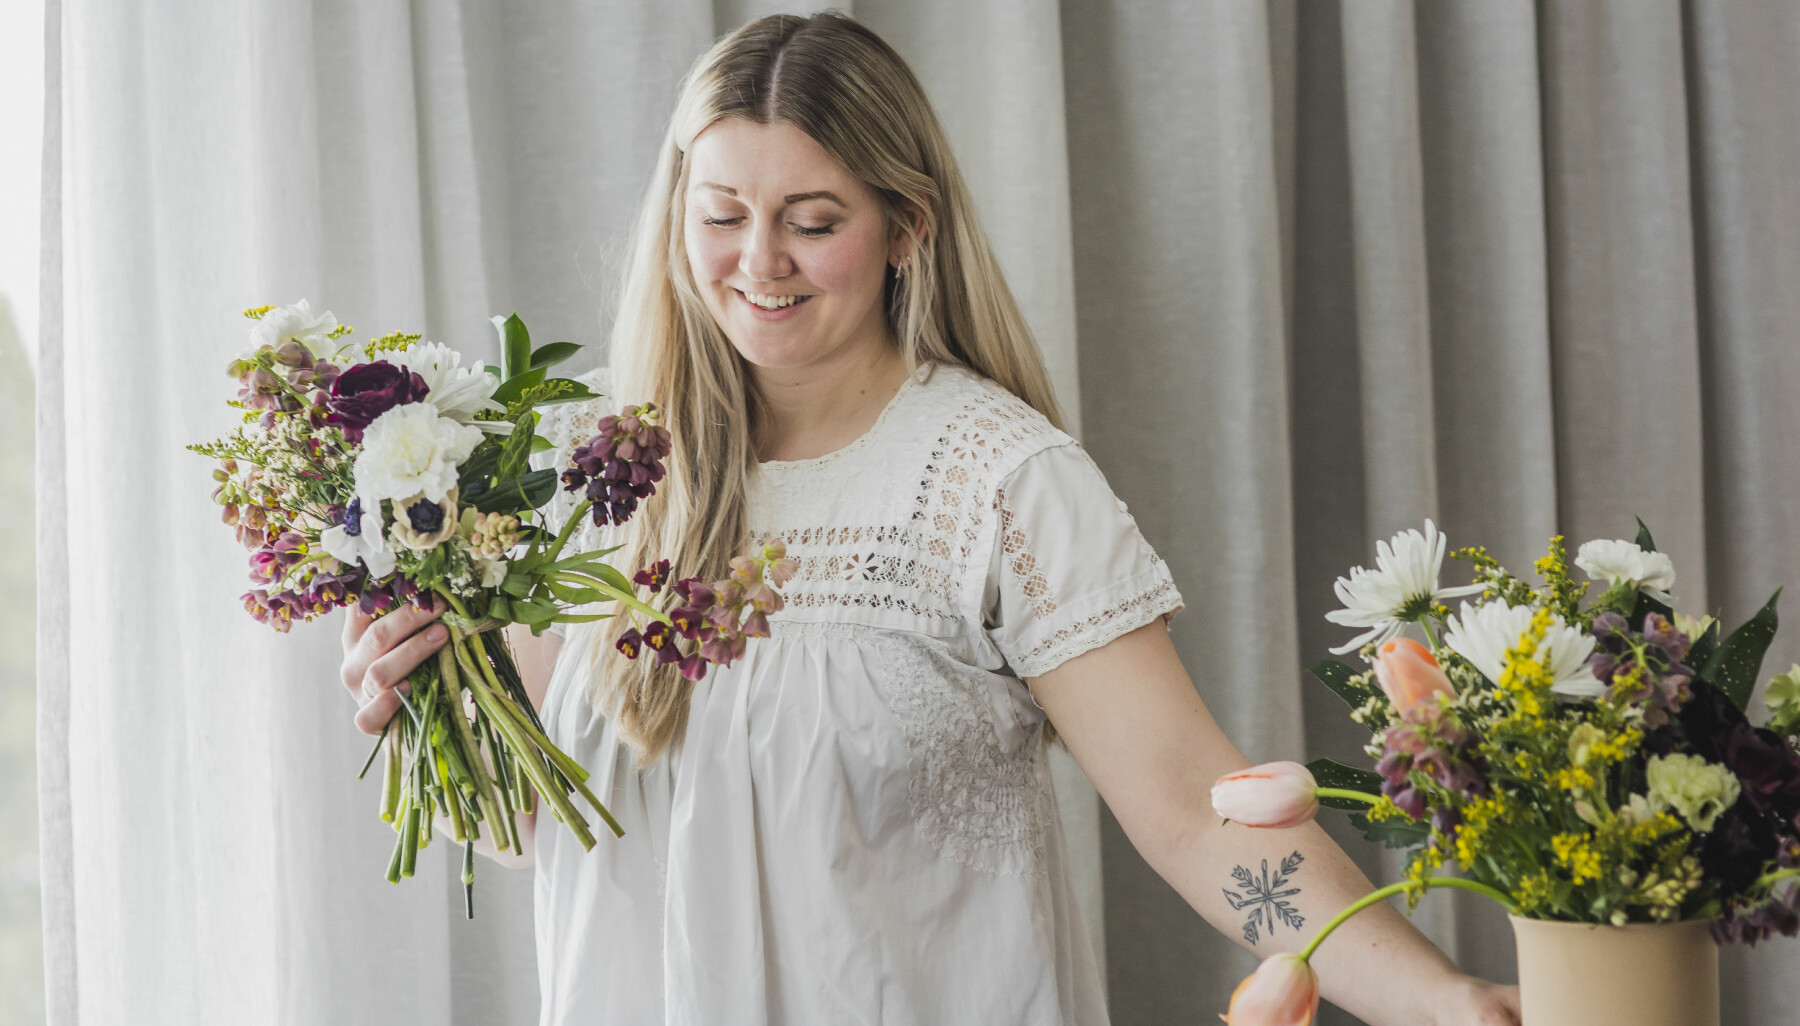 BETYDNING: Julie Bjørk tror blomsterspråket kan ha en større betydning i framtiden.